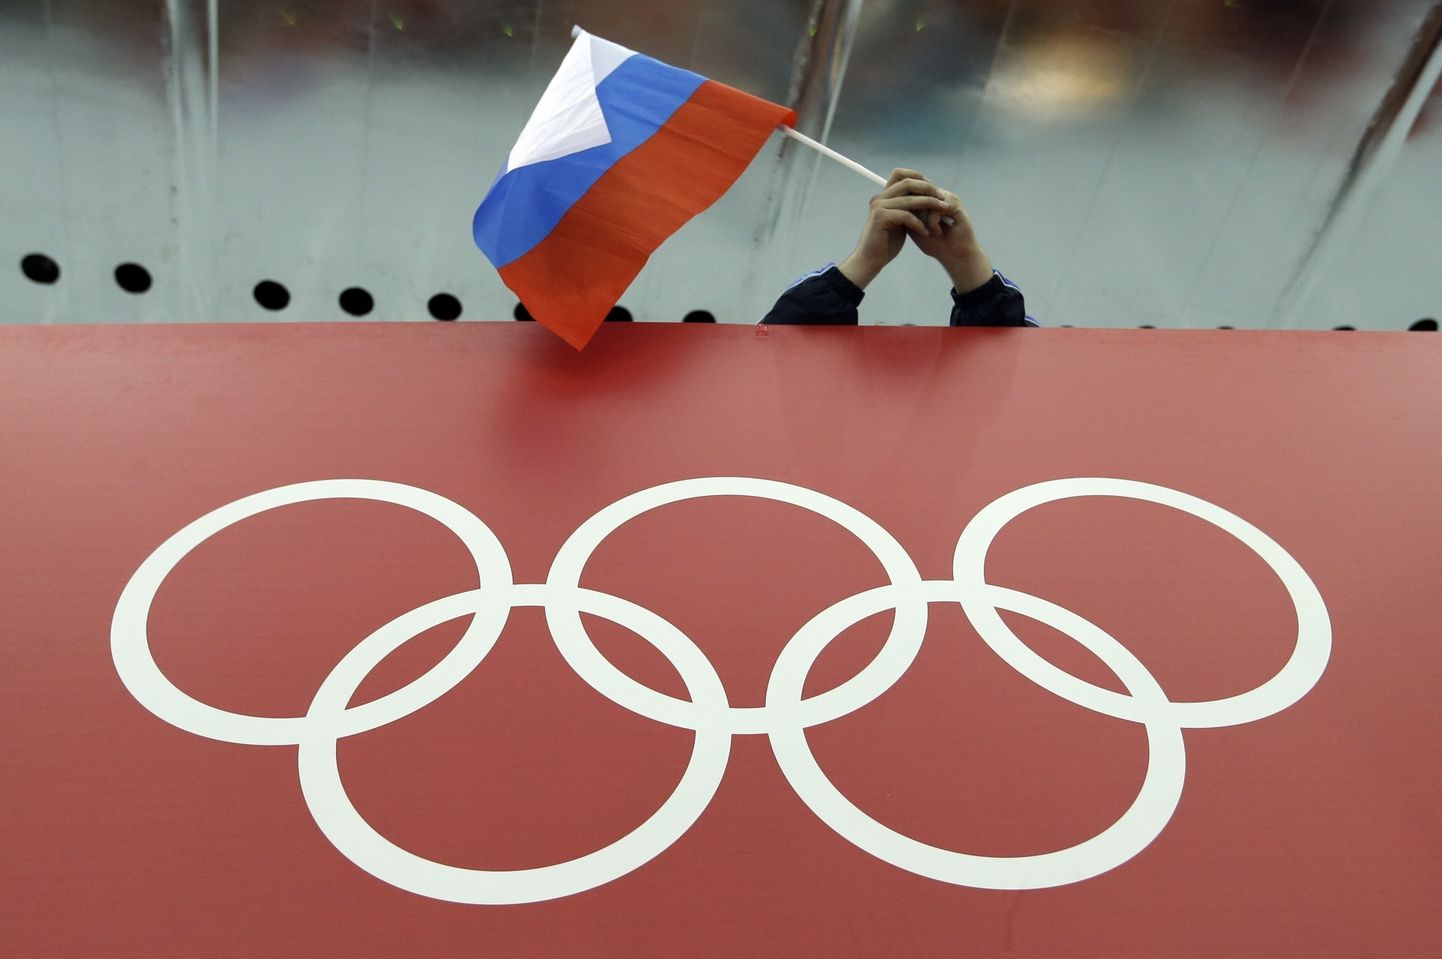 Krievijas karogs un olimpiskie riņķi